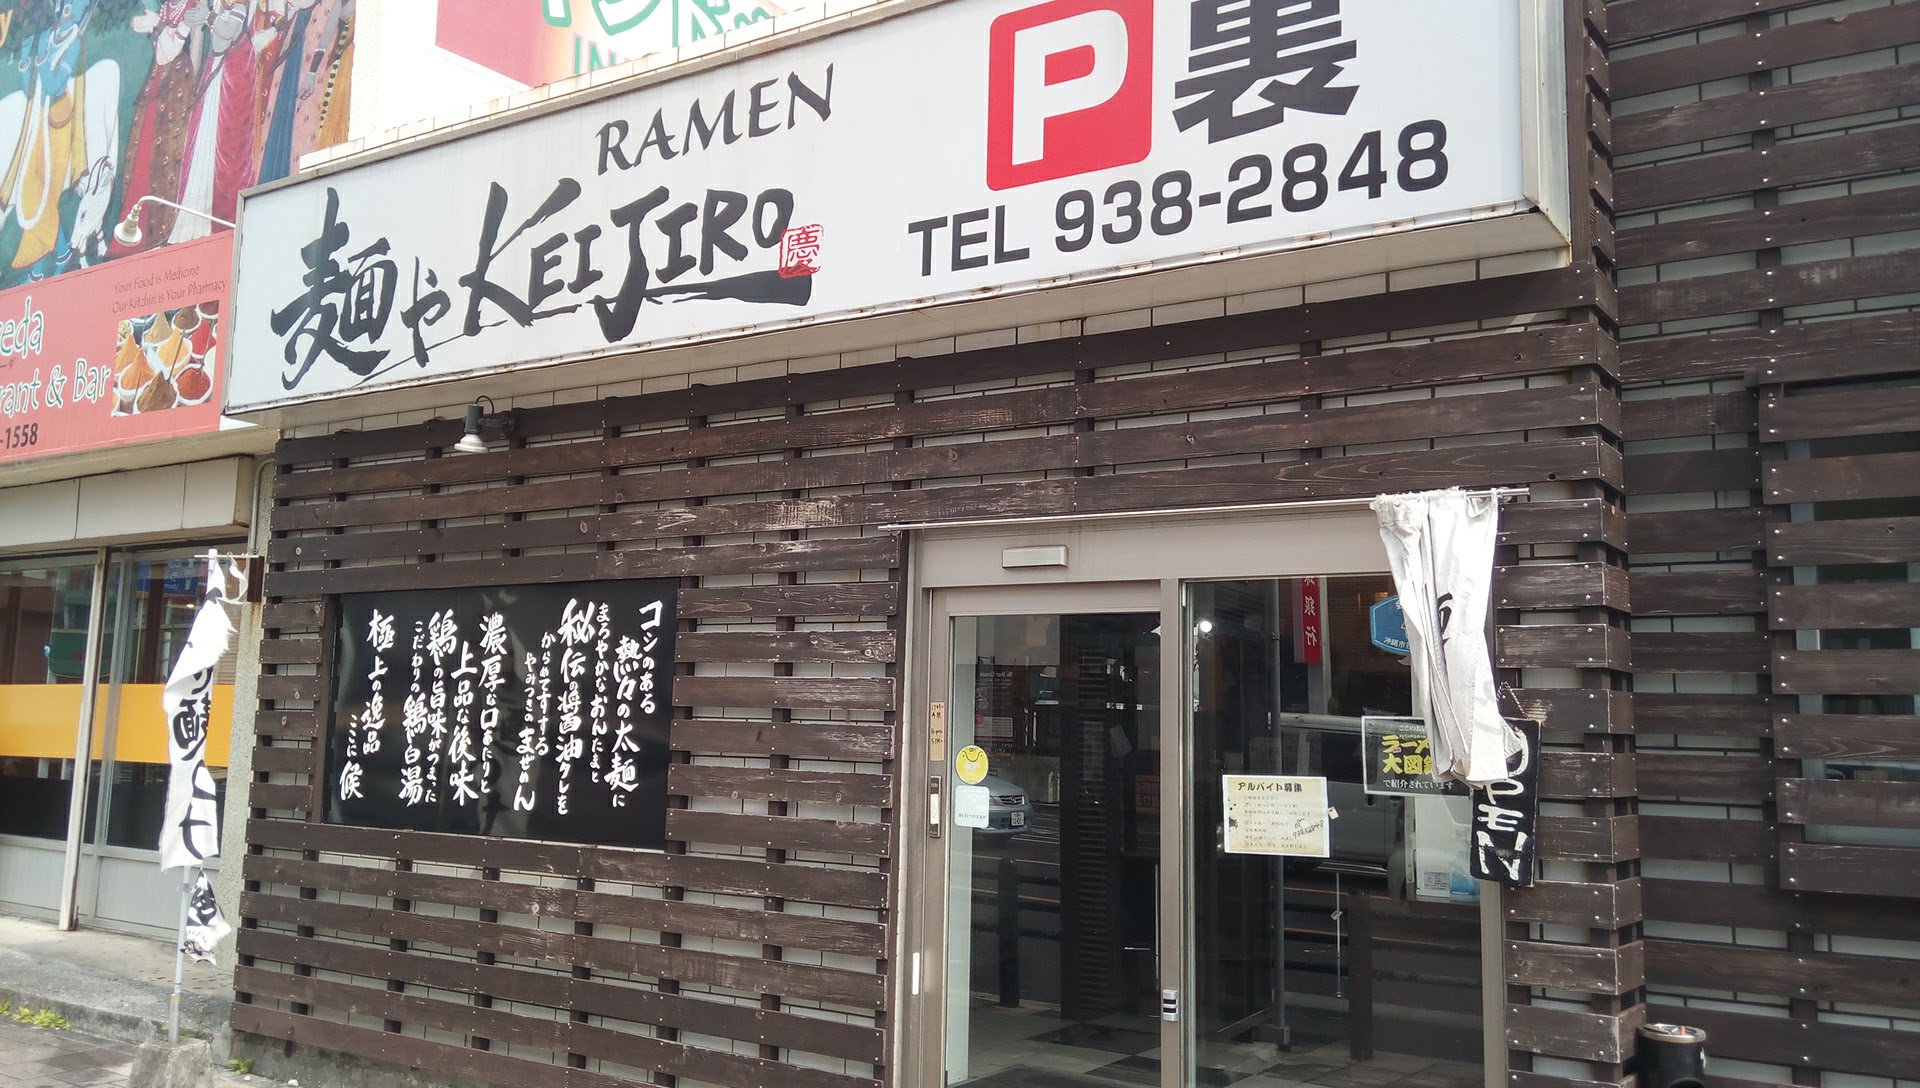 濃厚なつけ麺もまぜ麺も絶品‼ 沖縄市の麺やKEIJIRO